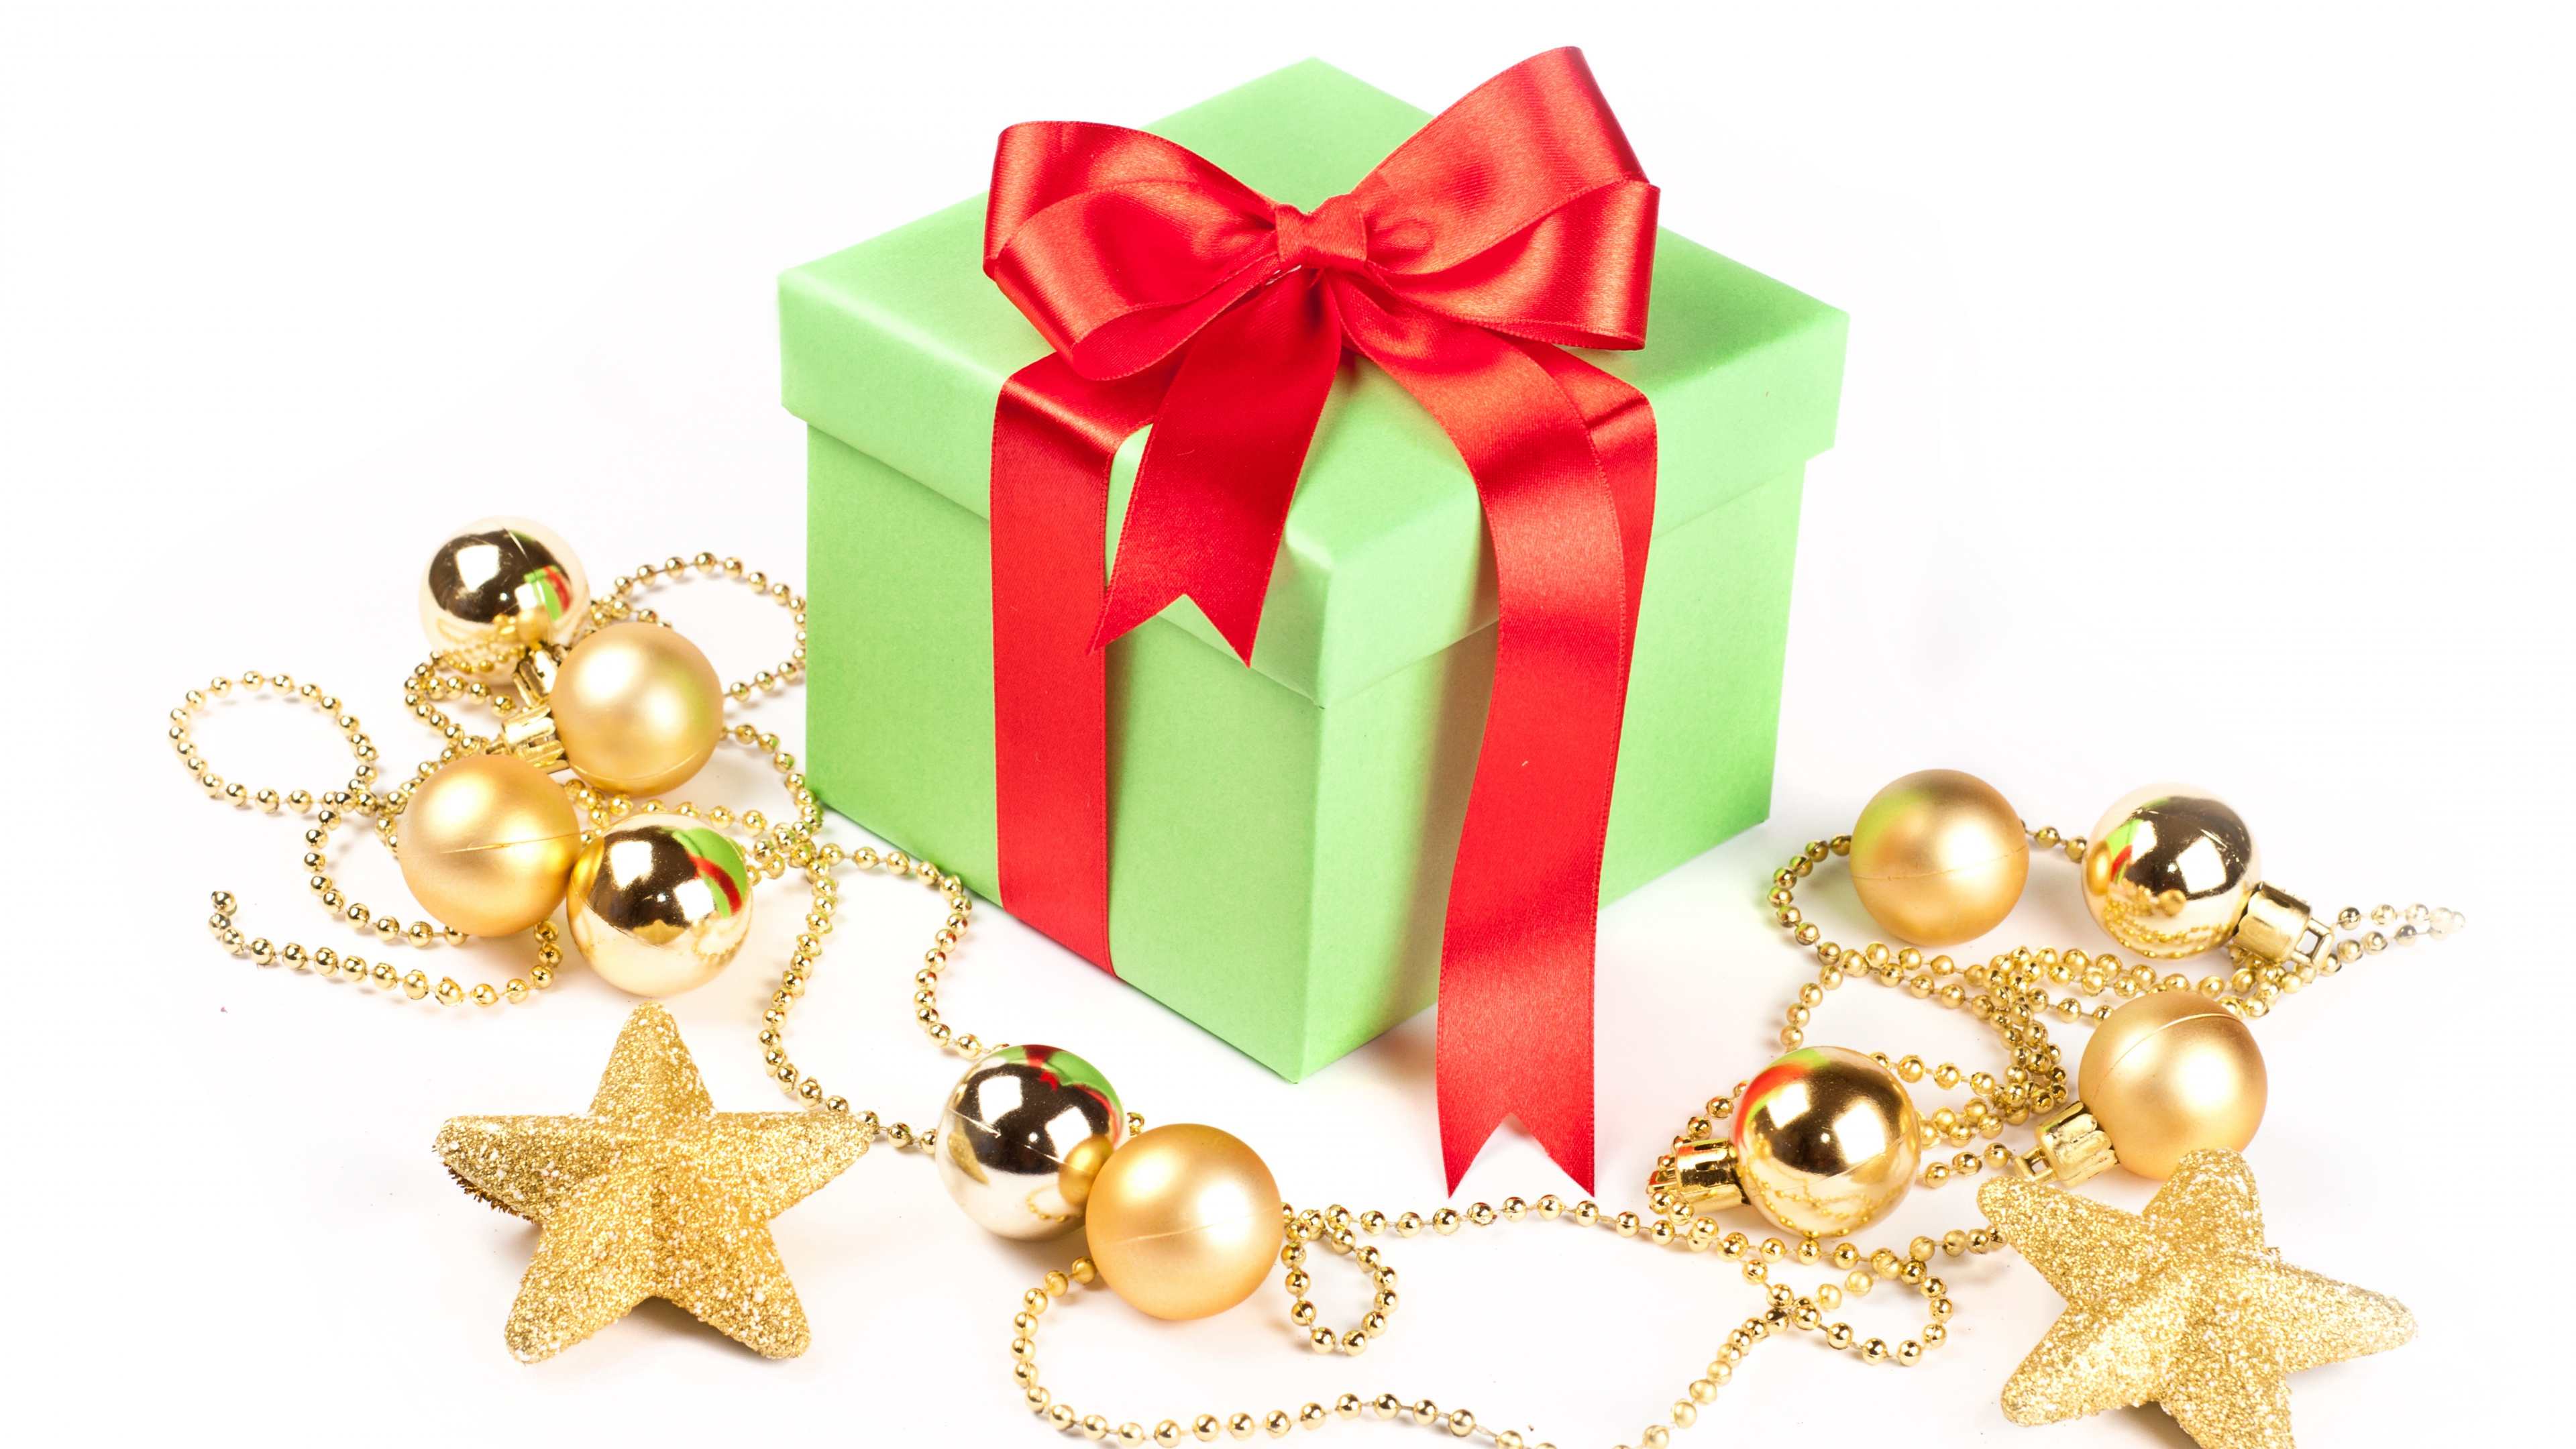 圣诞节的装饰品, 礼物, 圣诞节那天, 新的一年, 礼品包装 壁纸 3840x2160 允许